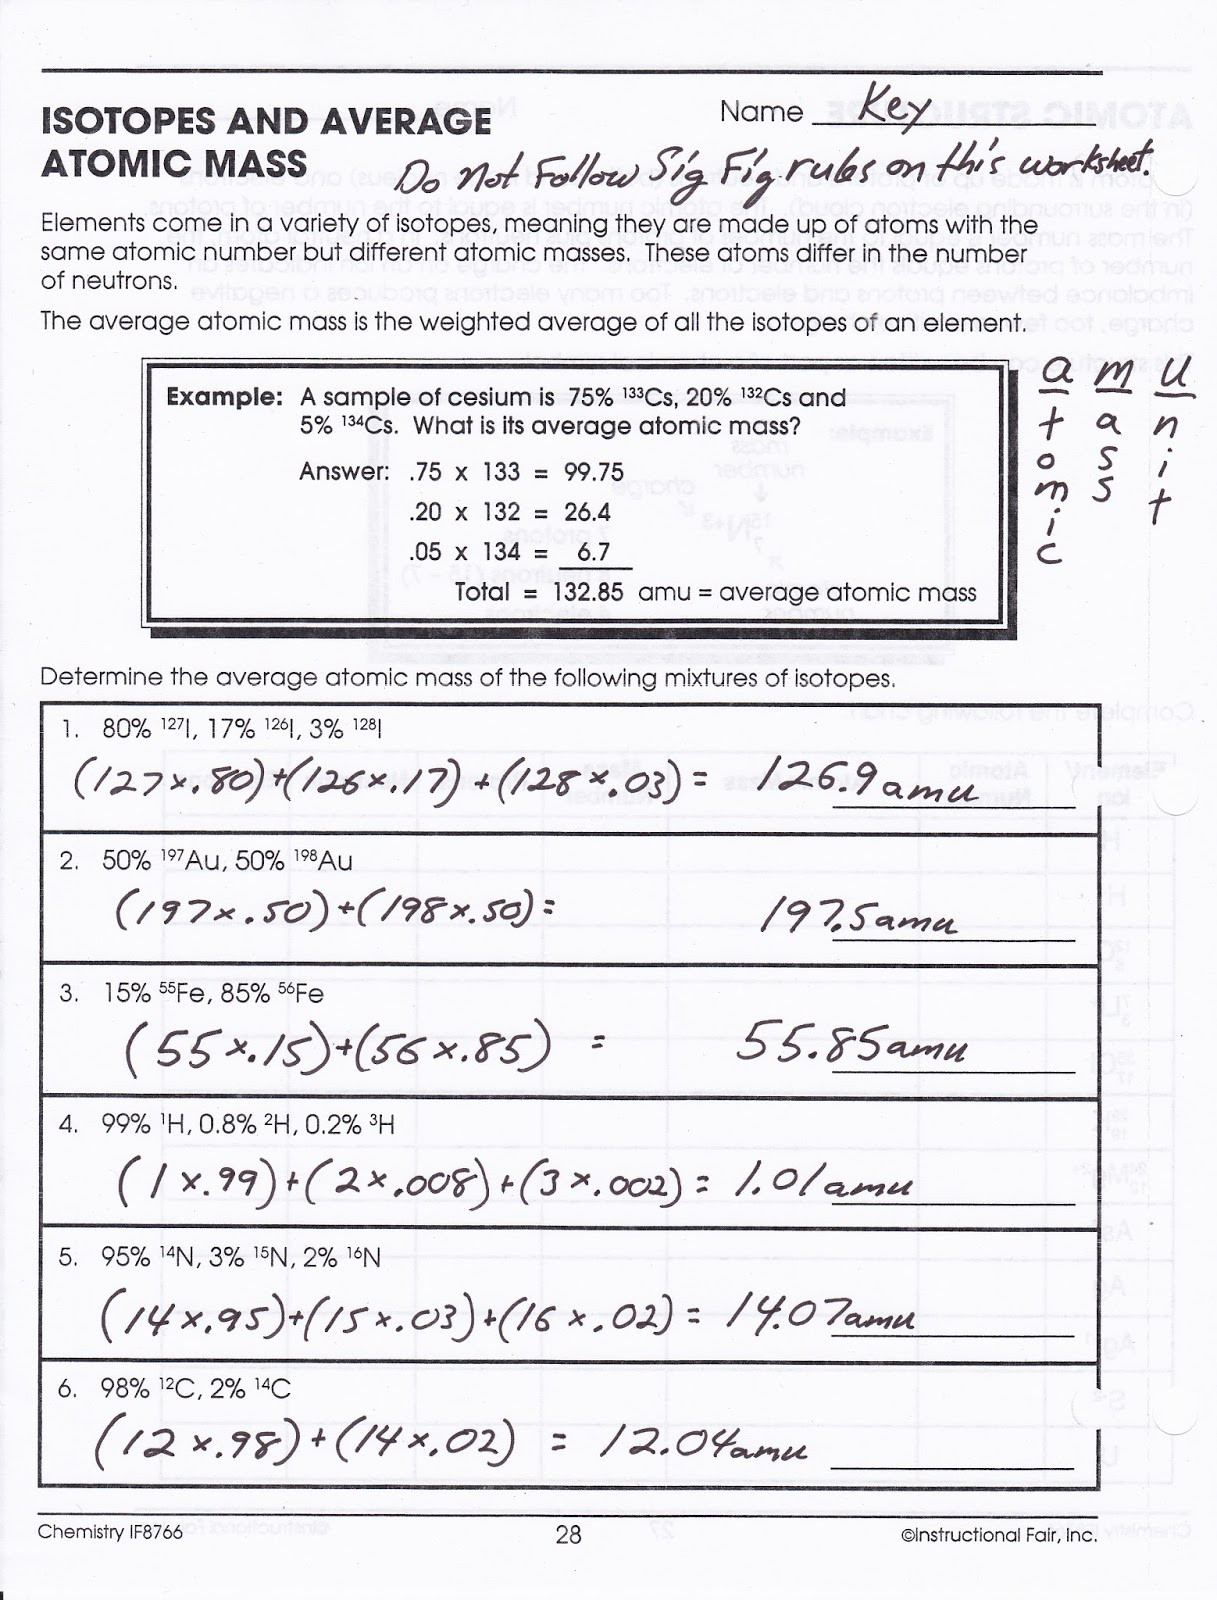 Calculating Average atomic Mass Worksheet 30 Calculating Average atomic Mass Worksheet Worksheet